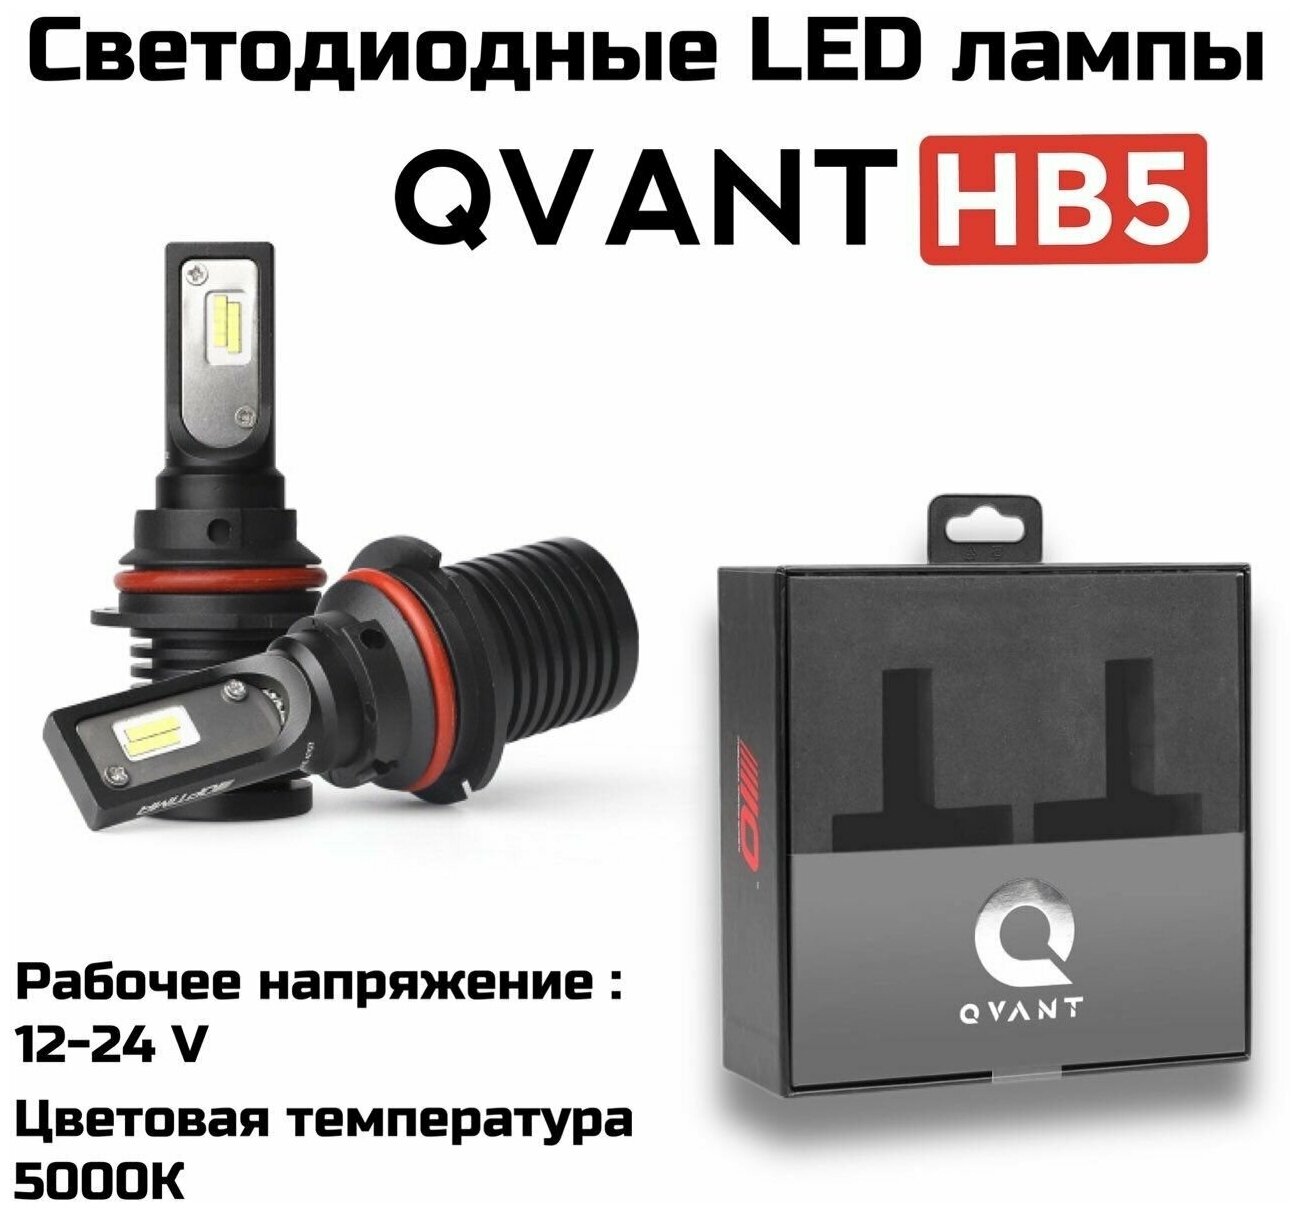 Светодиодные автомобильные лампы Optima LED QVANT HB5 5000K 12-24V